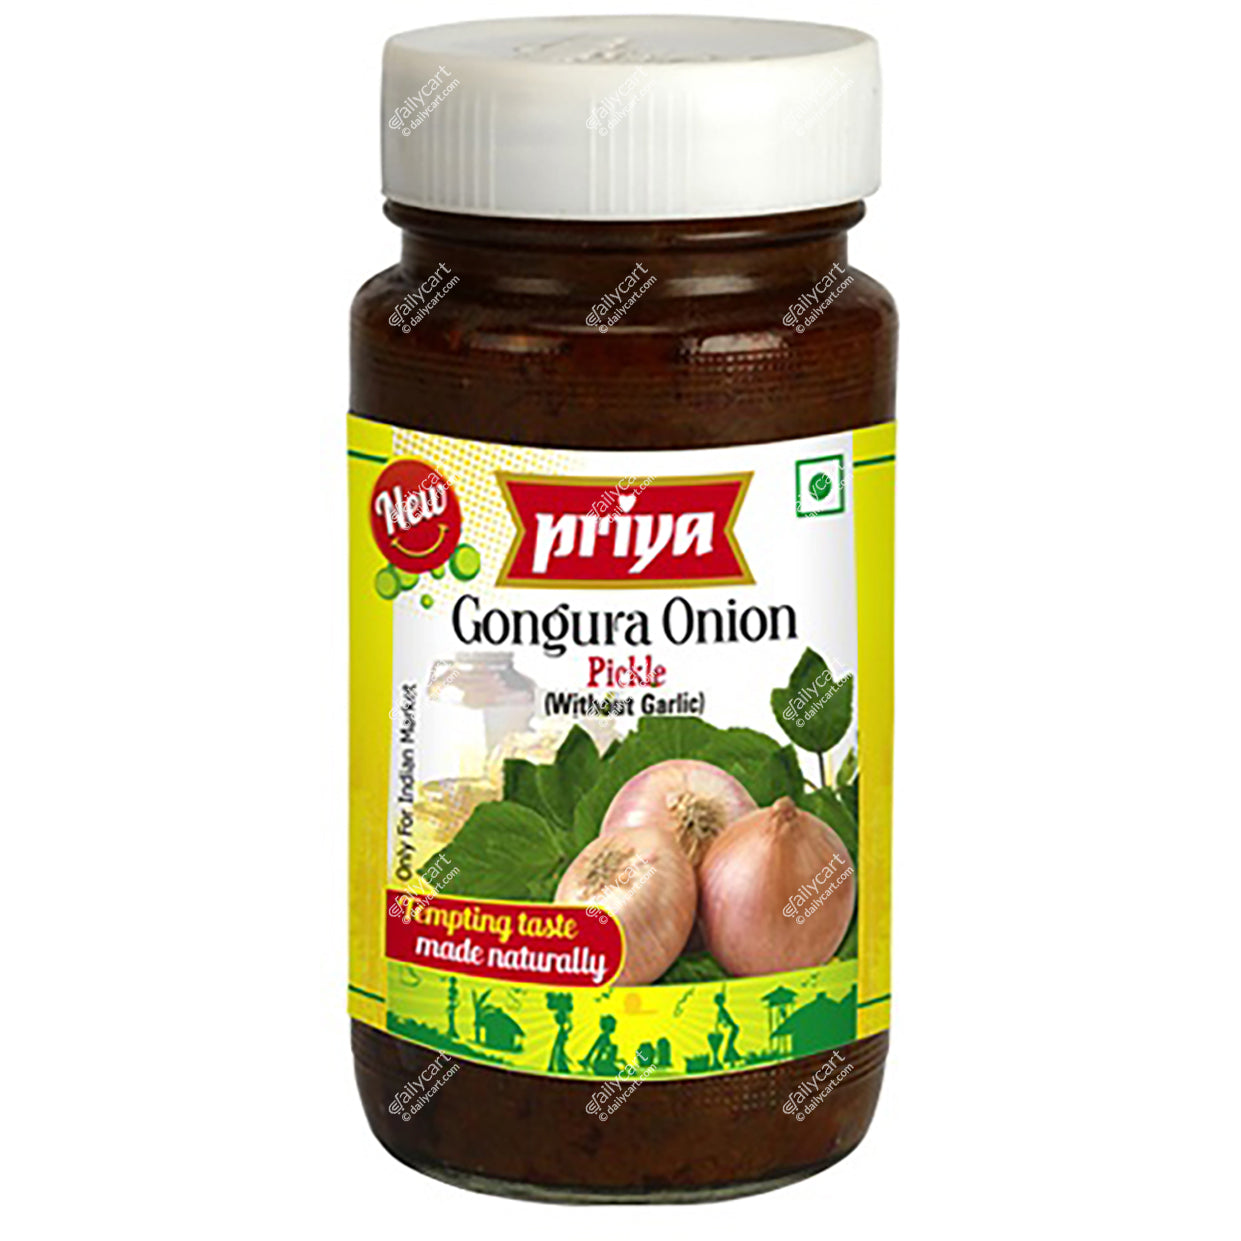 Priya Onion Gongura Pickle Without Garlic, 300 g